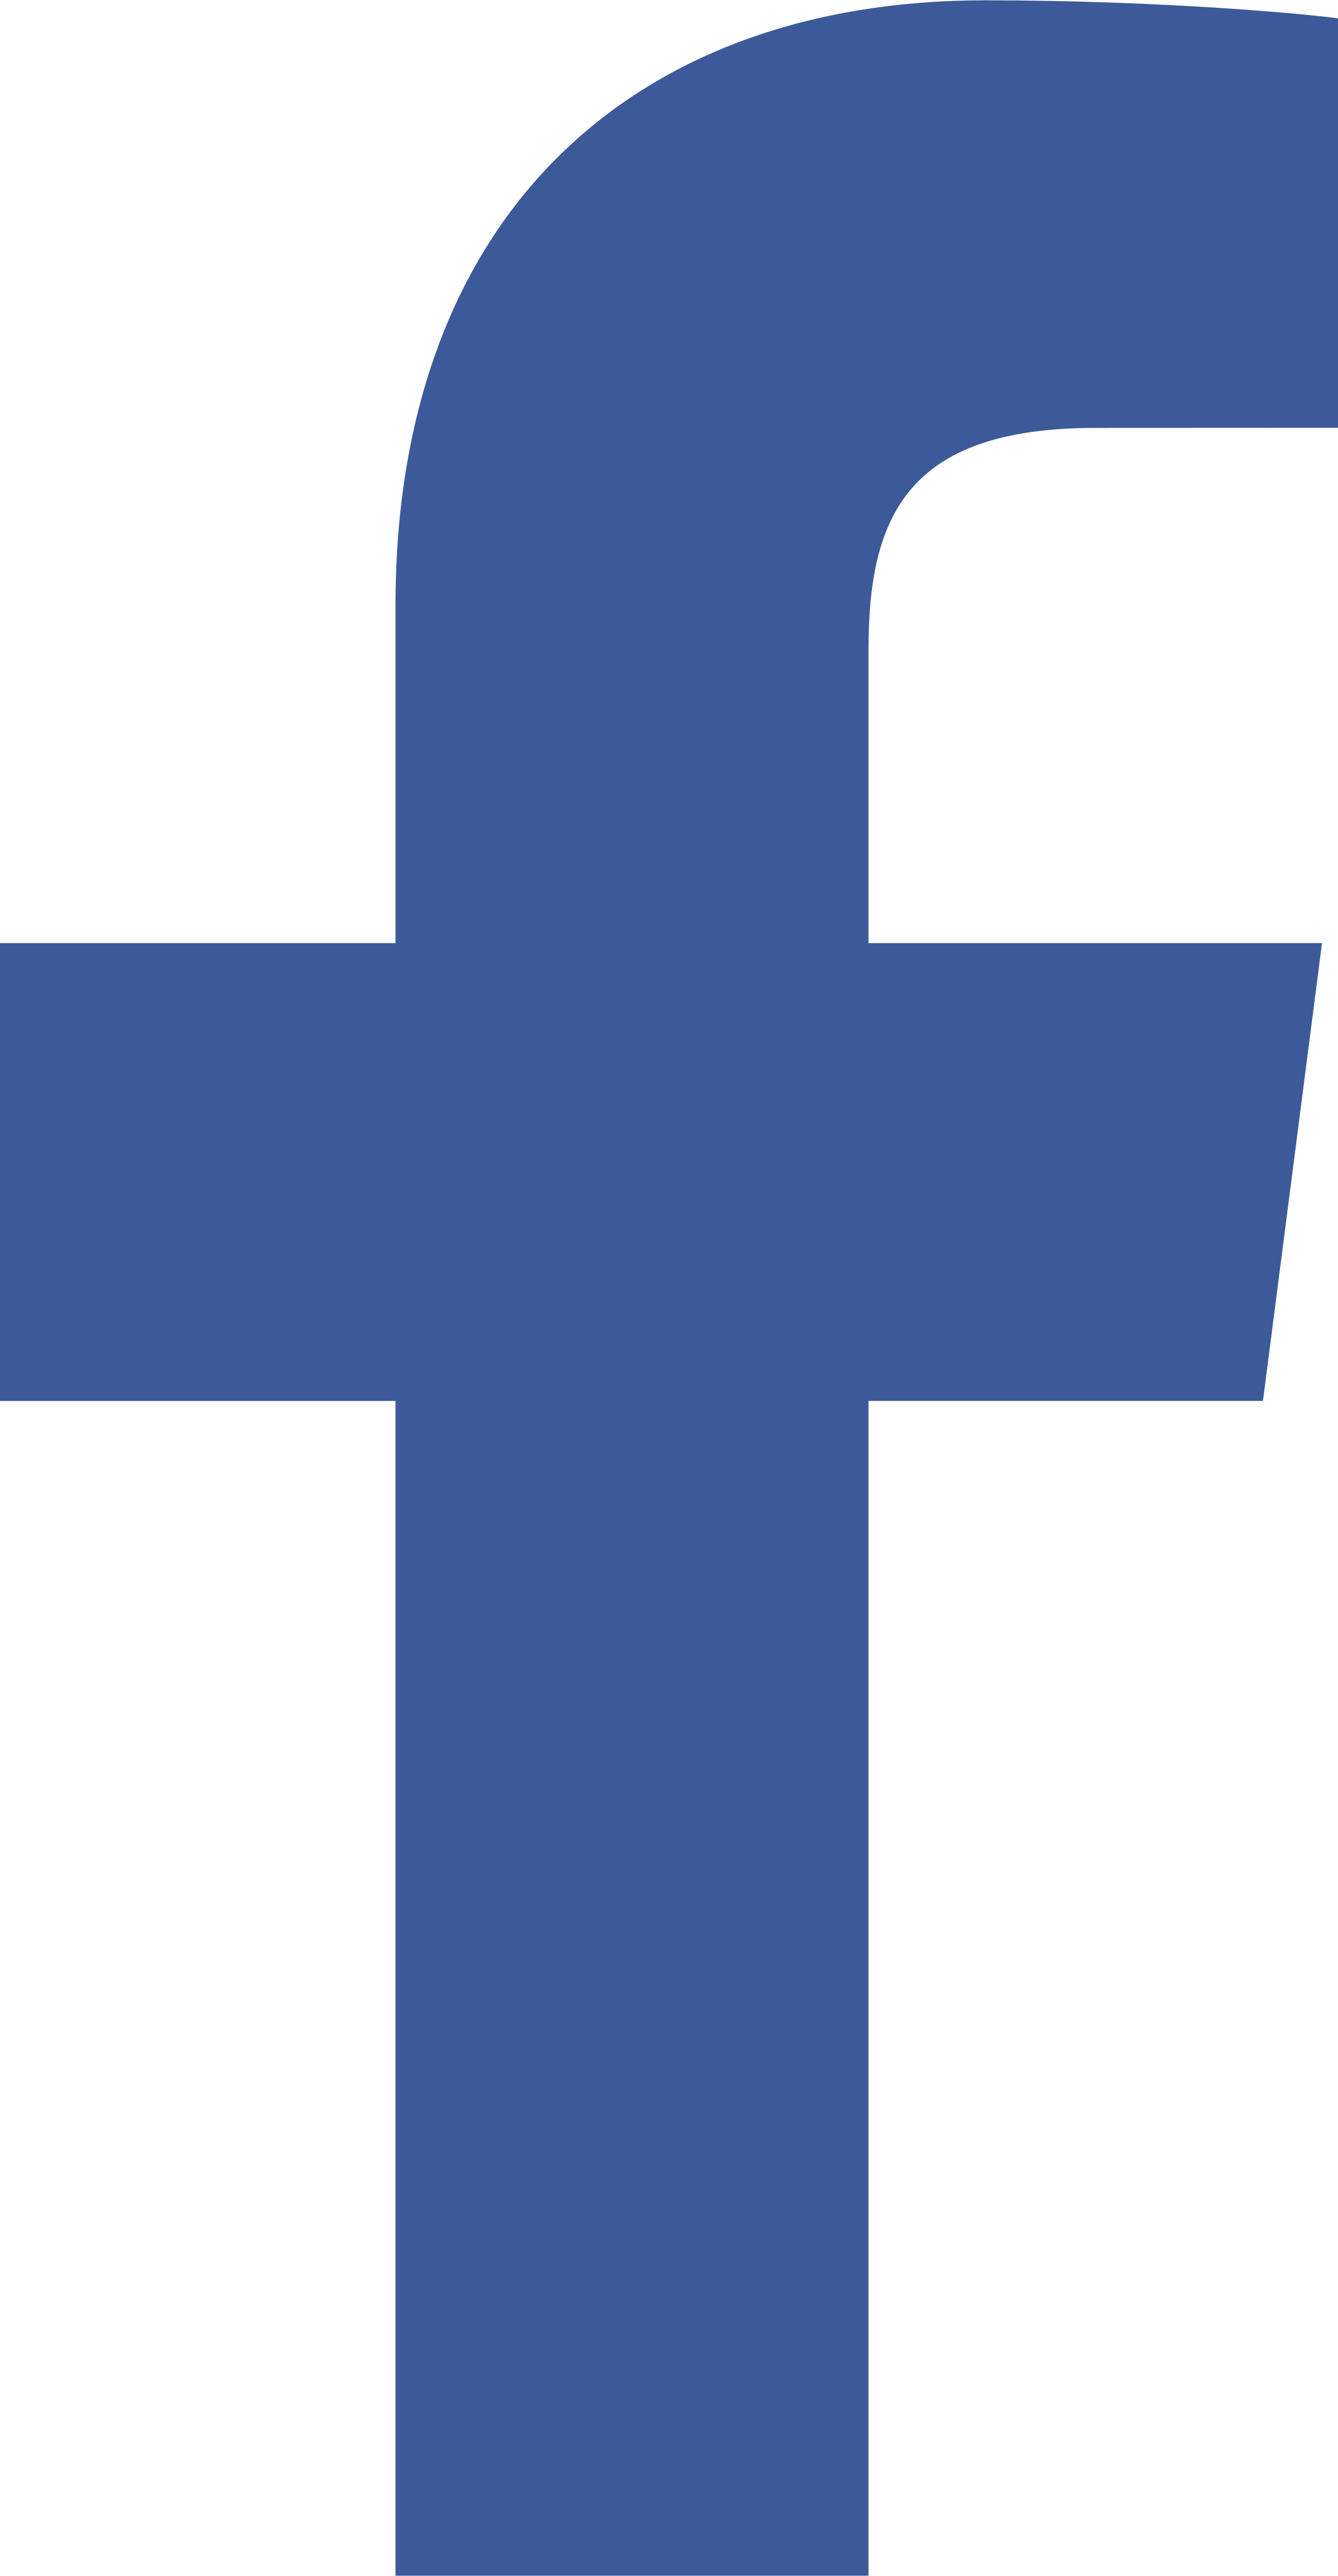 Facebook Logo PNG Background Image